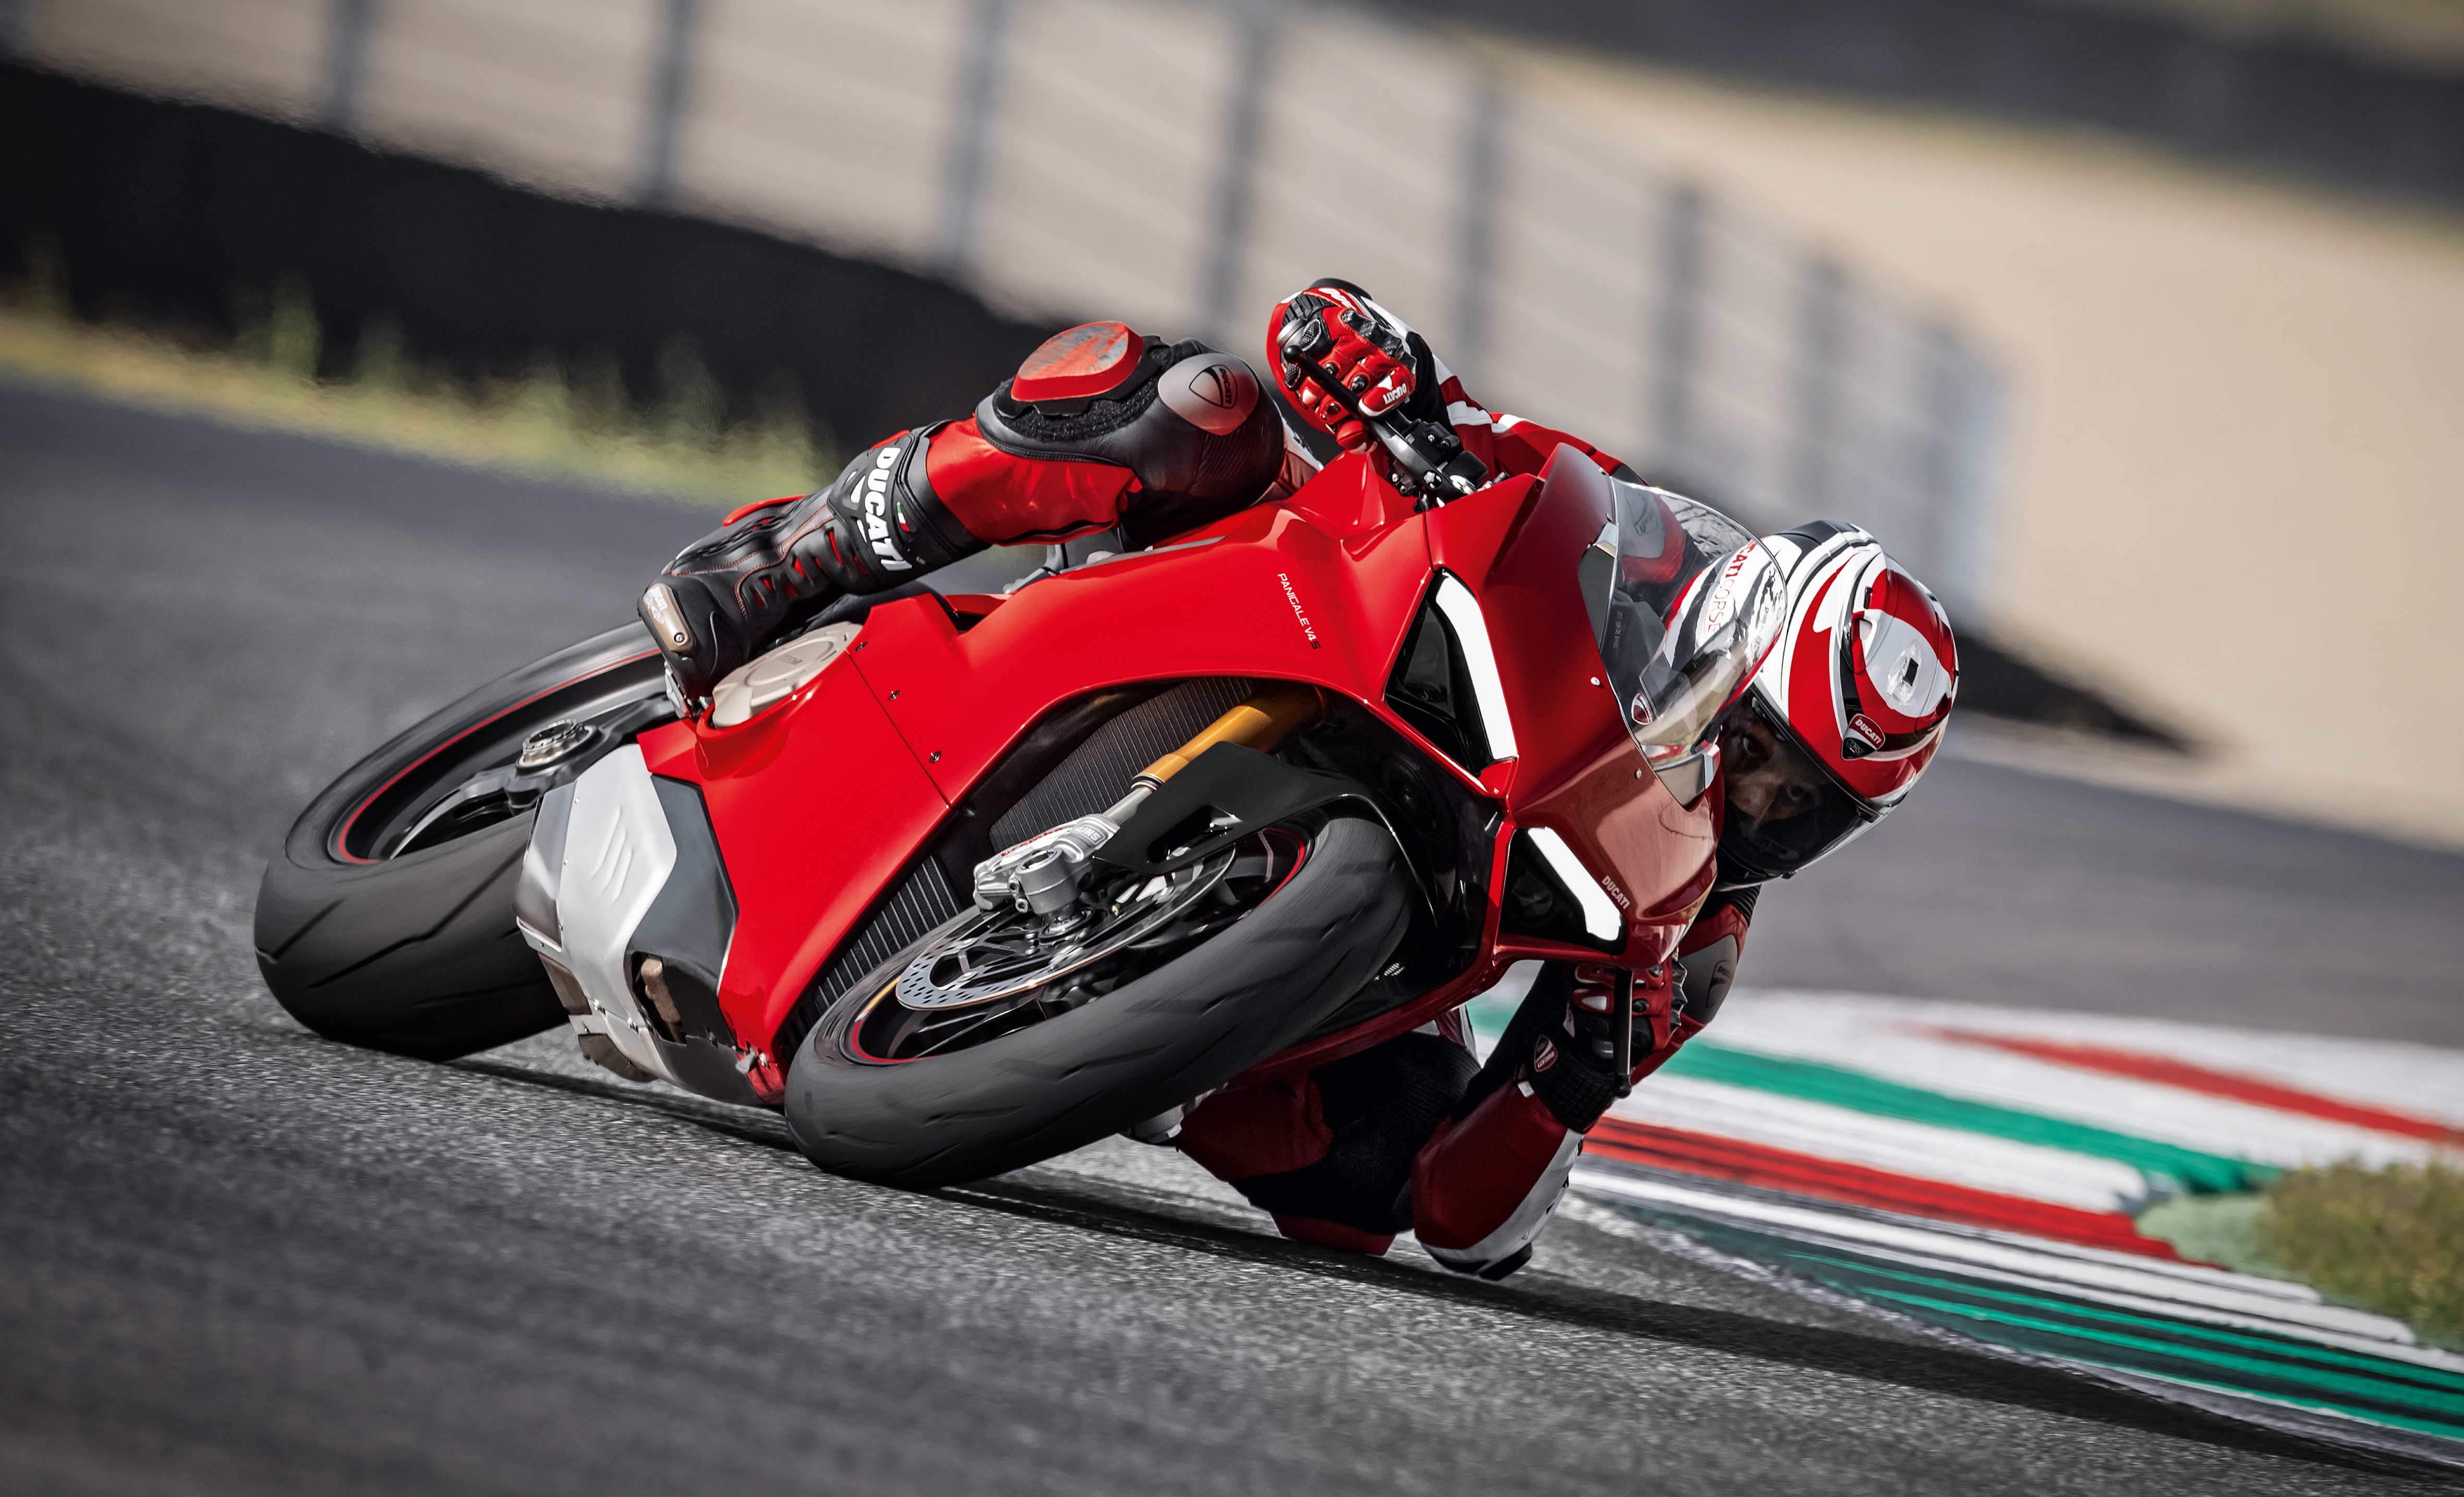 Télécharger des fonds d'écran Ducati Panigale V4 HD